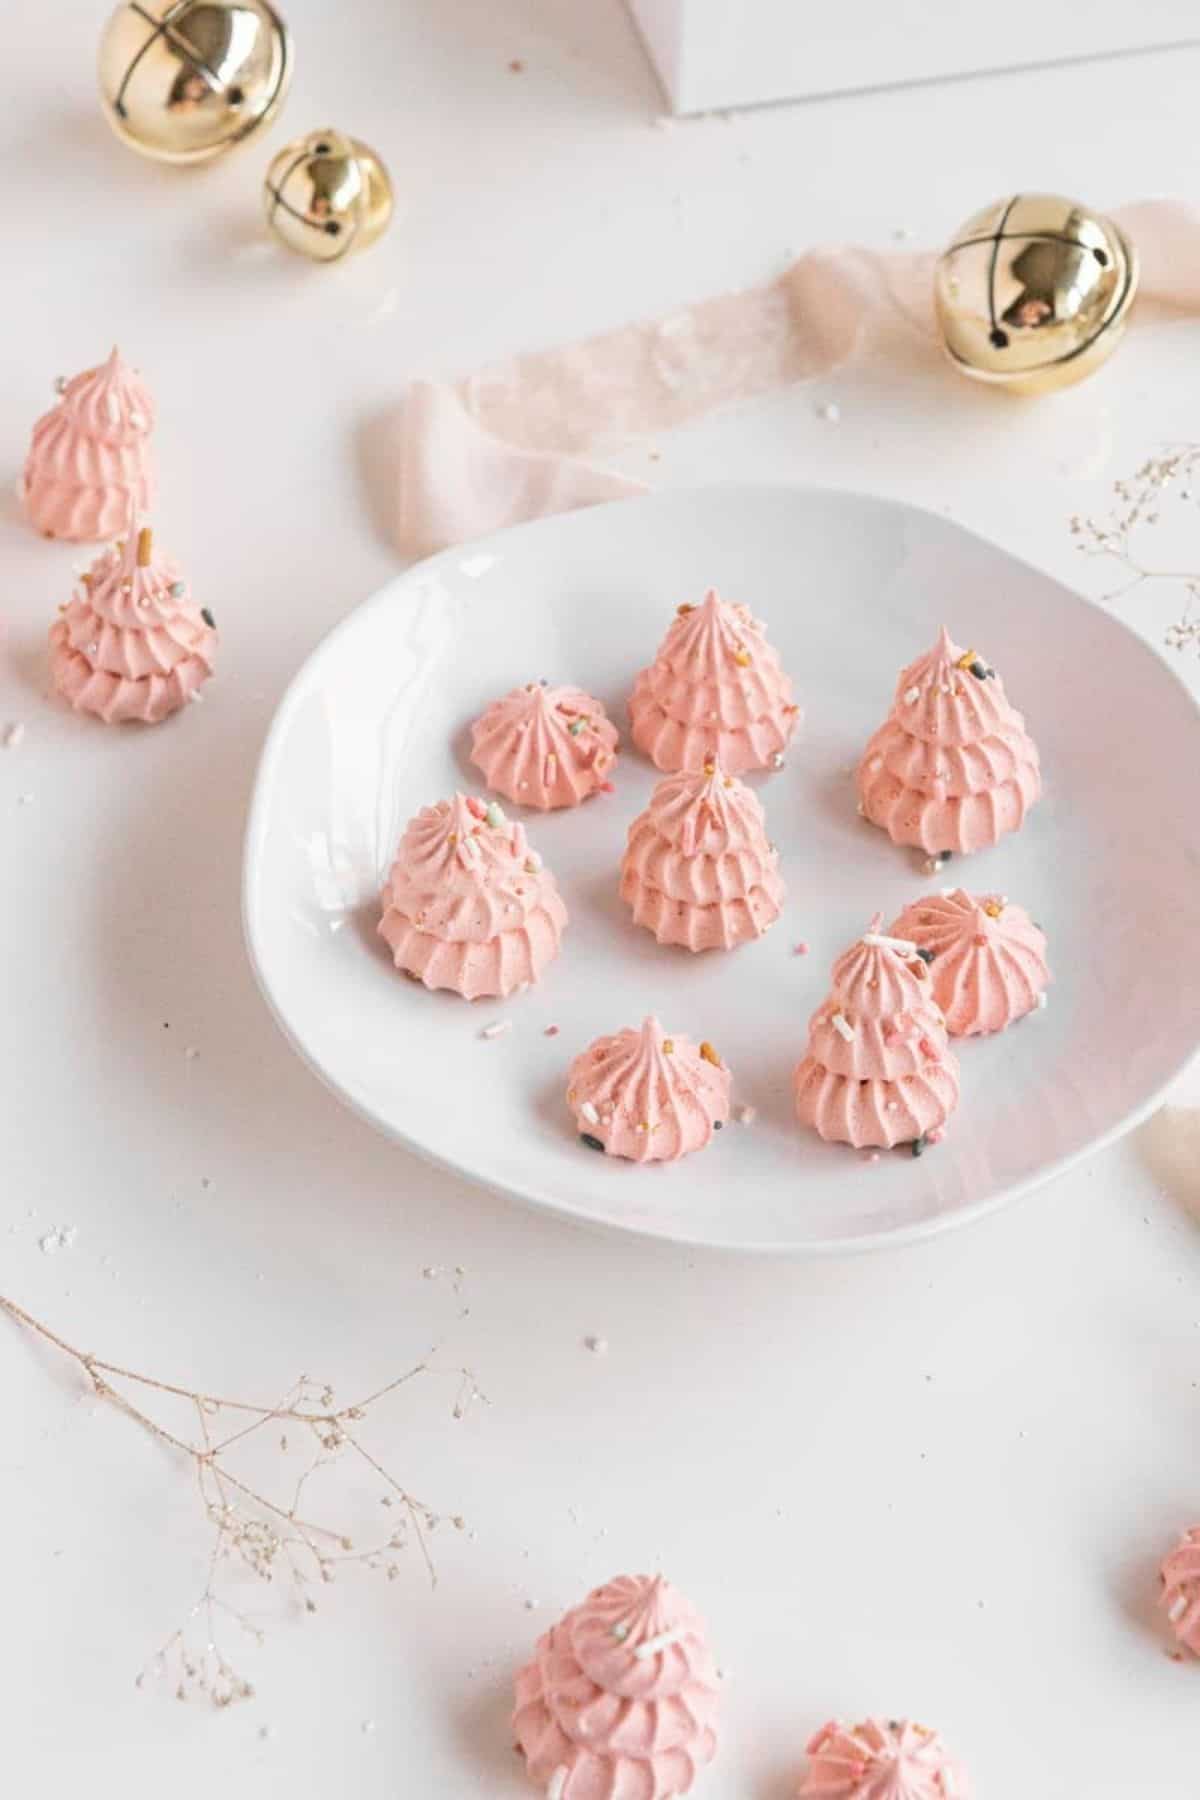 Christmas tree pink meringue candies on plate